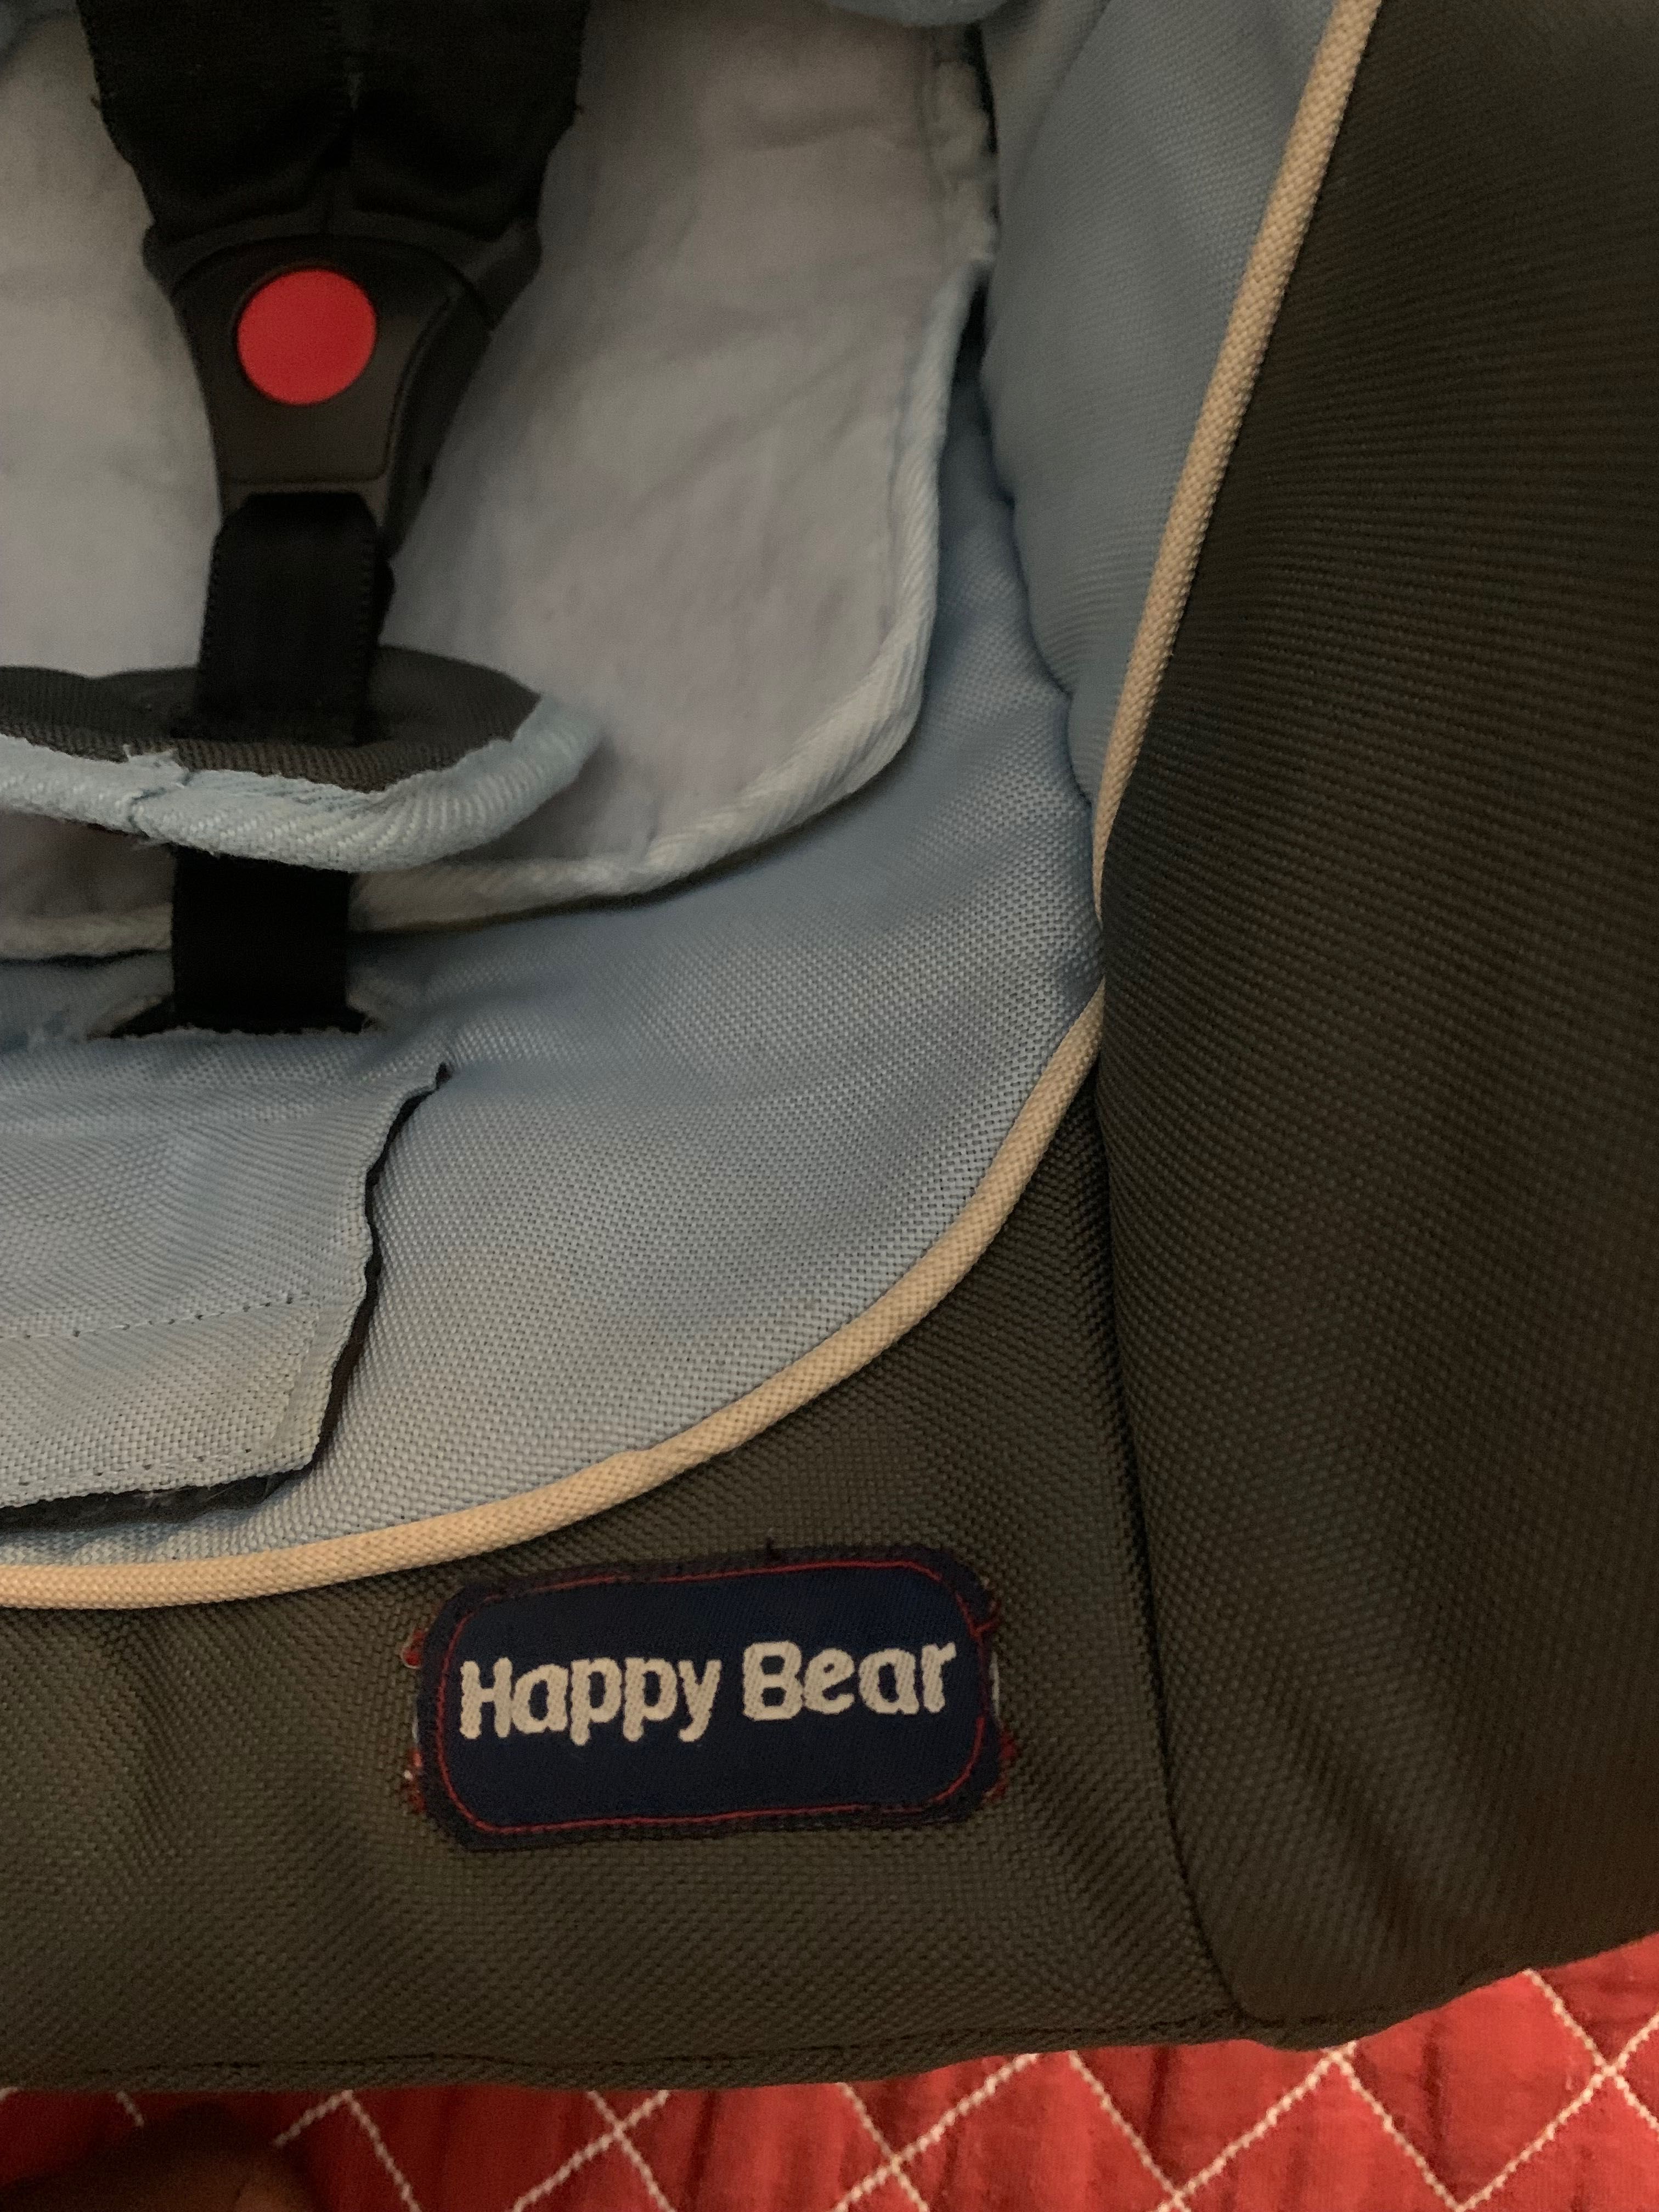 Ovo de bebê da marca happy bear